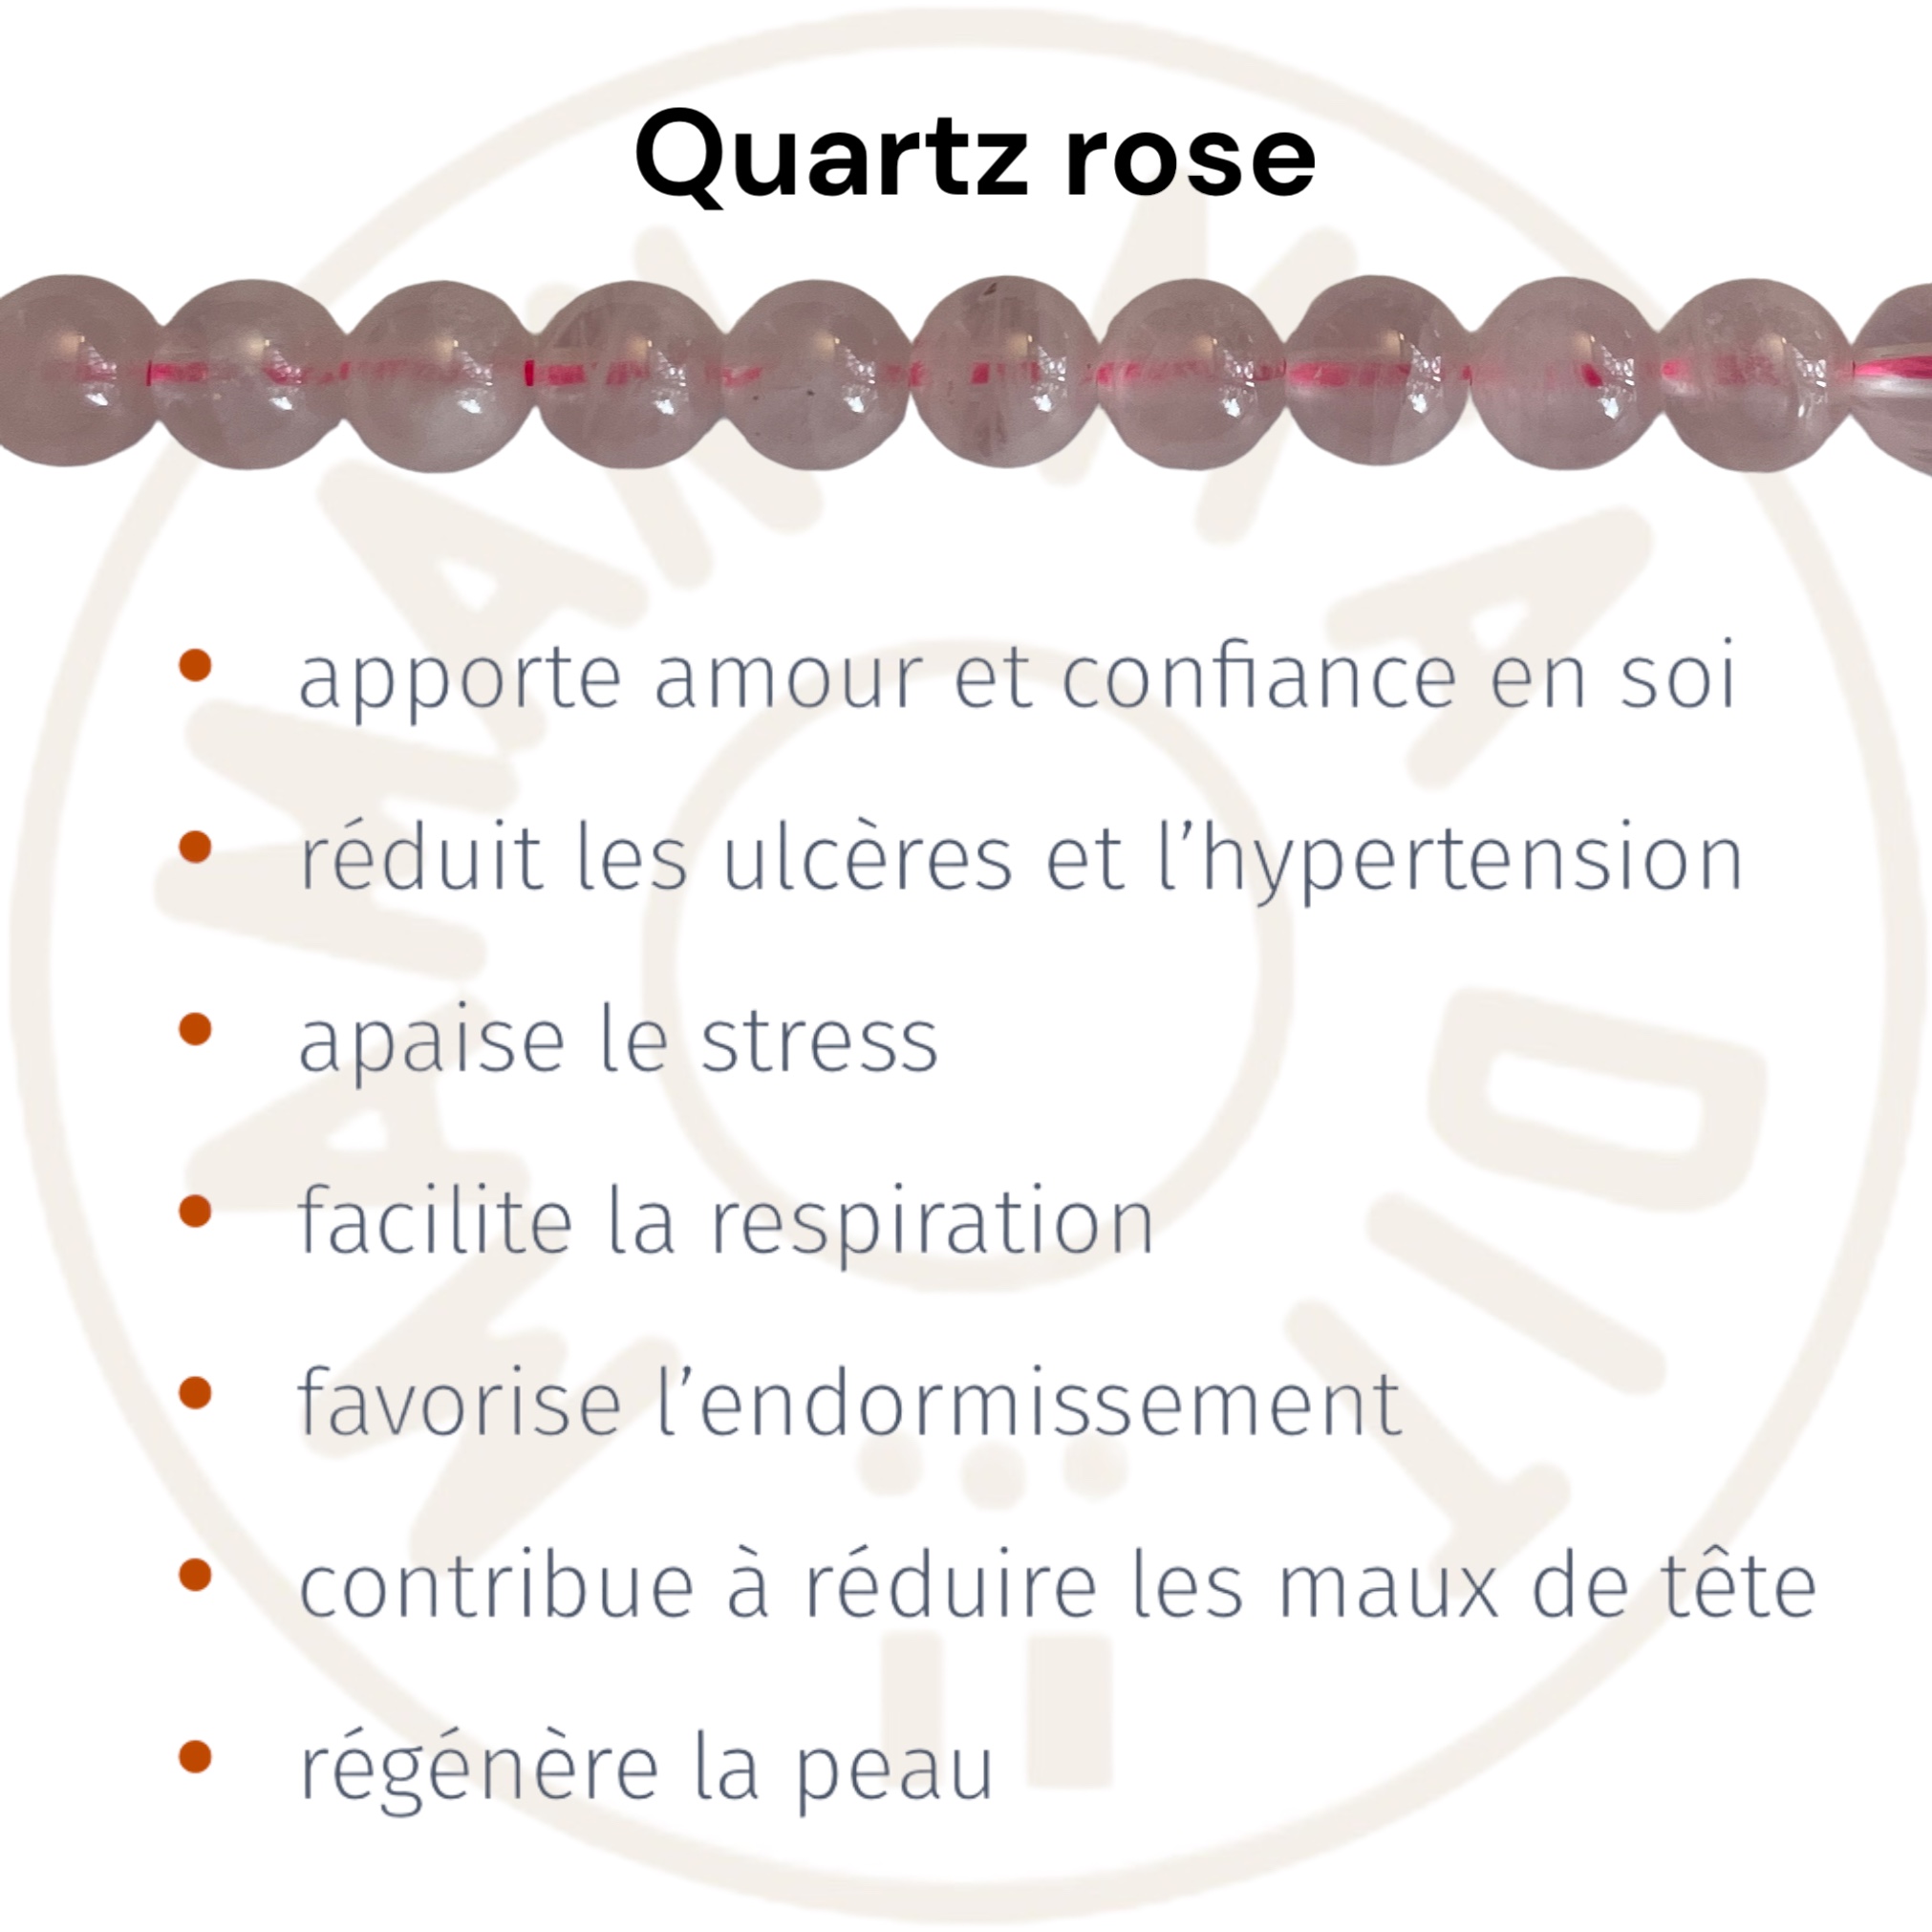 quartz-rose-vertus.jpeg